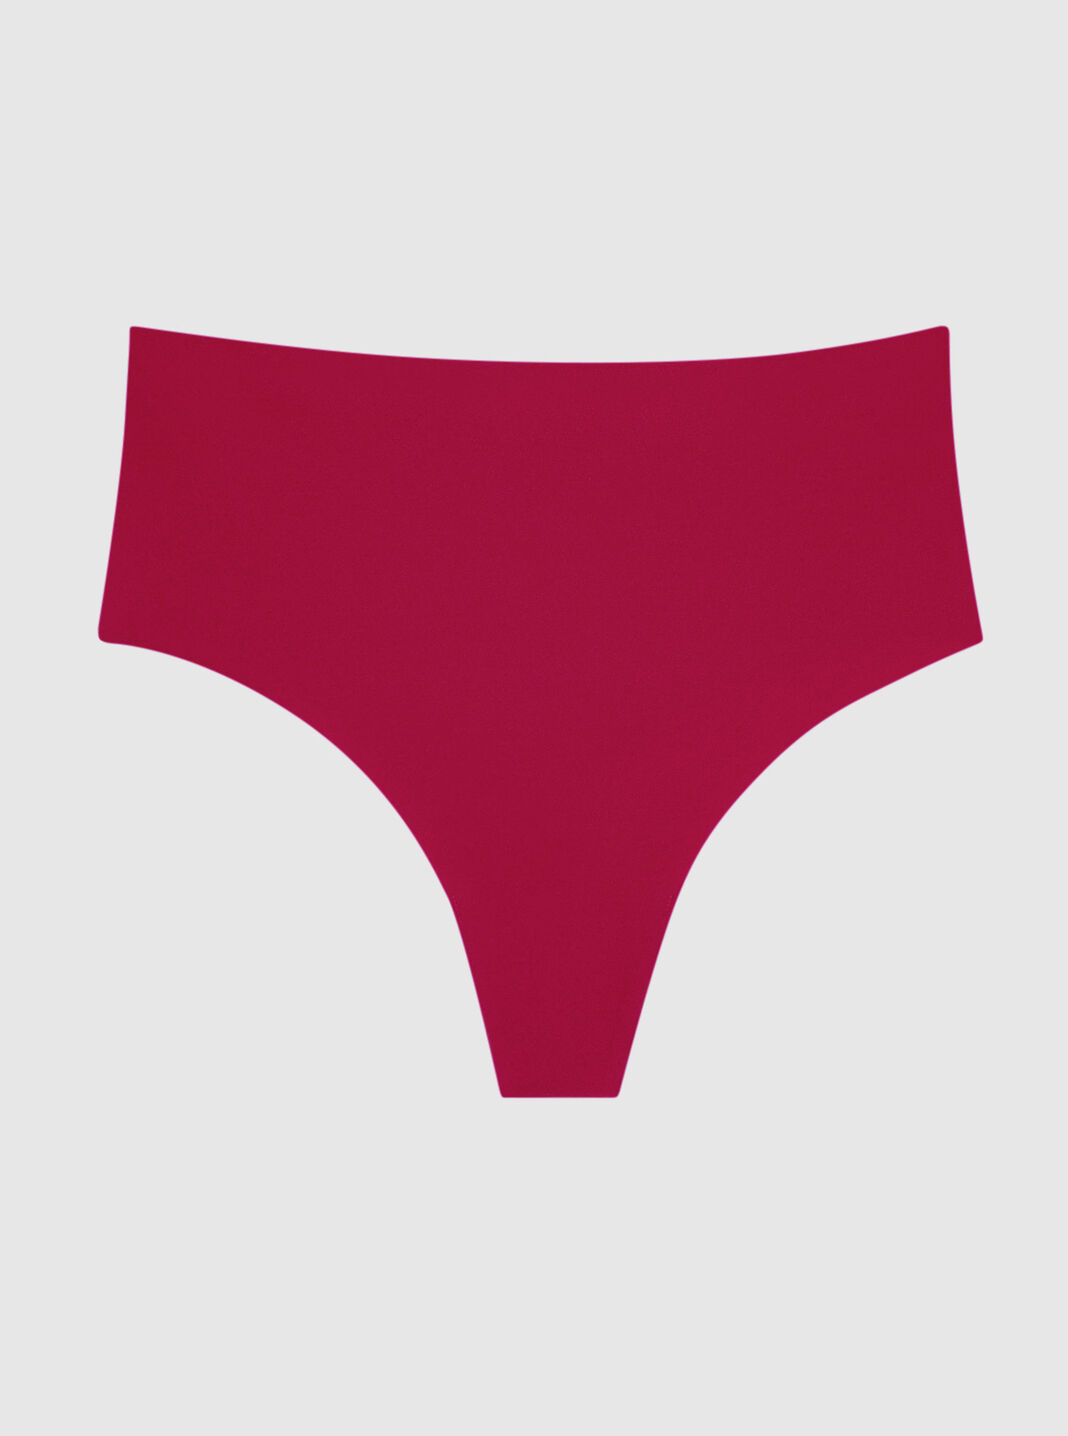 Red Womens Panties - Buy Red Womens Panties Online at Best Prices